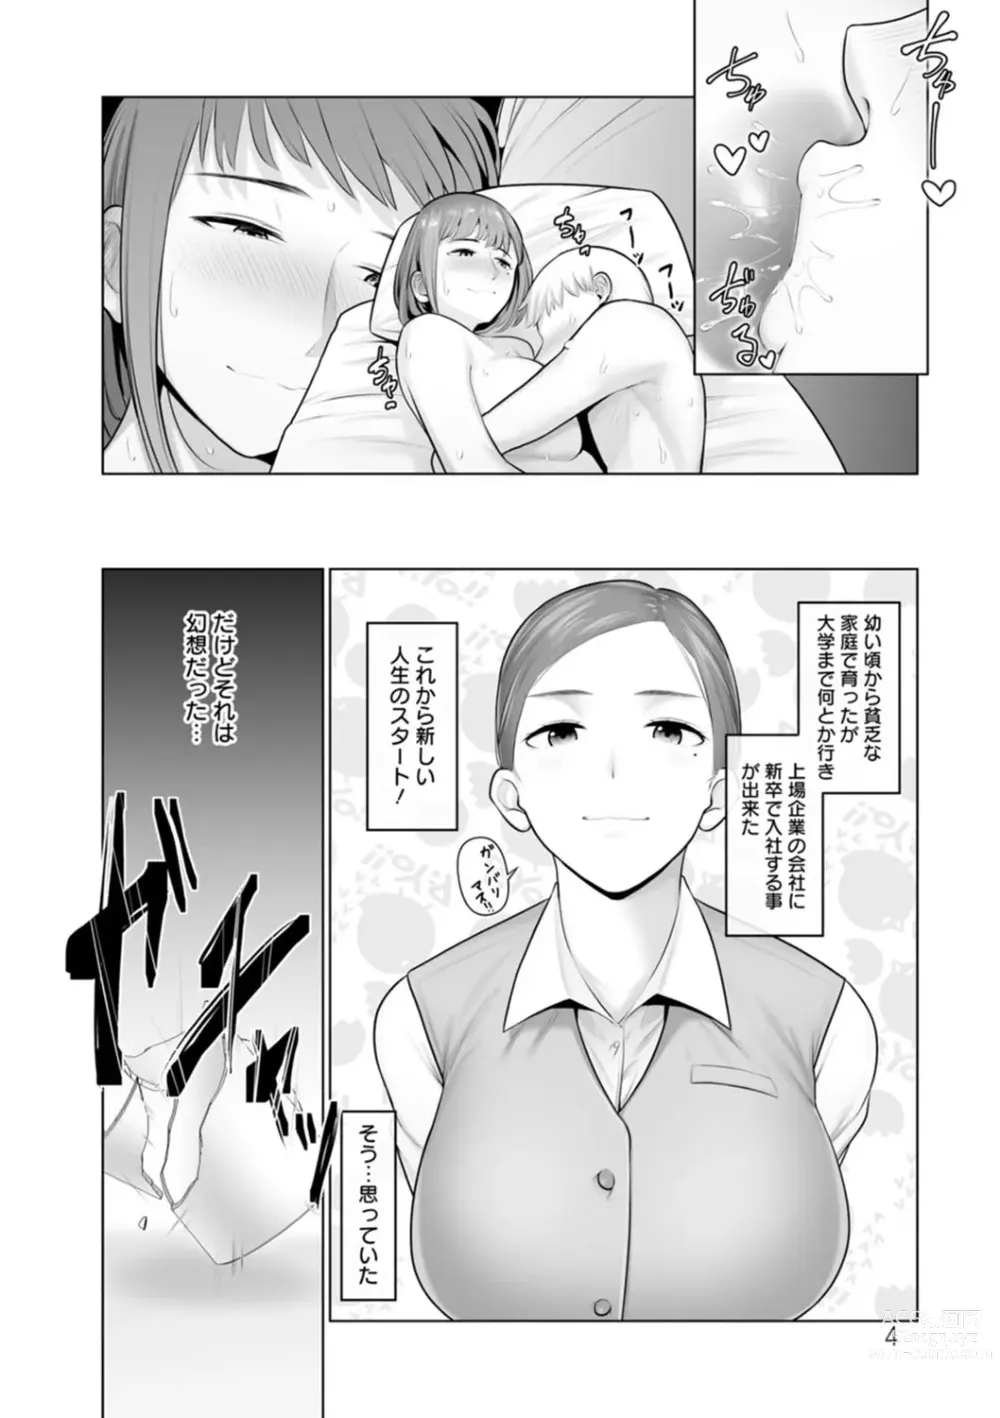 Page 190 of manga Sugao no kimi o okashitai